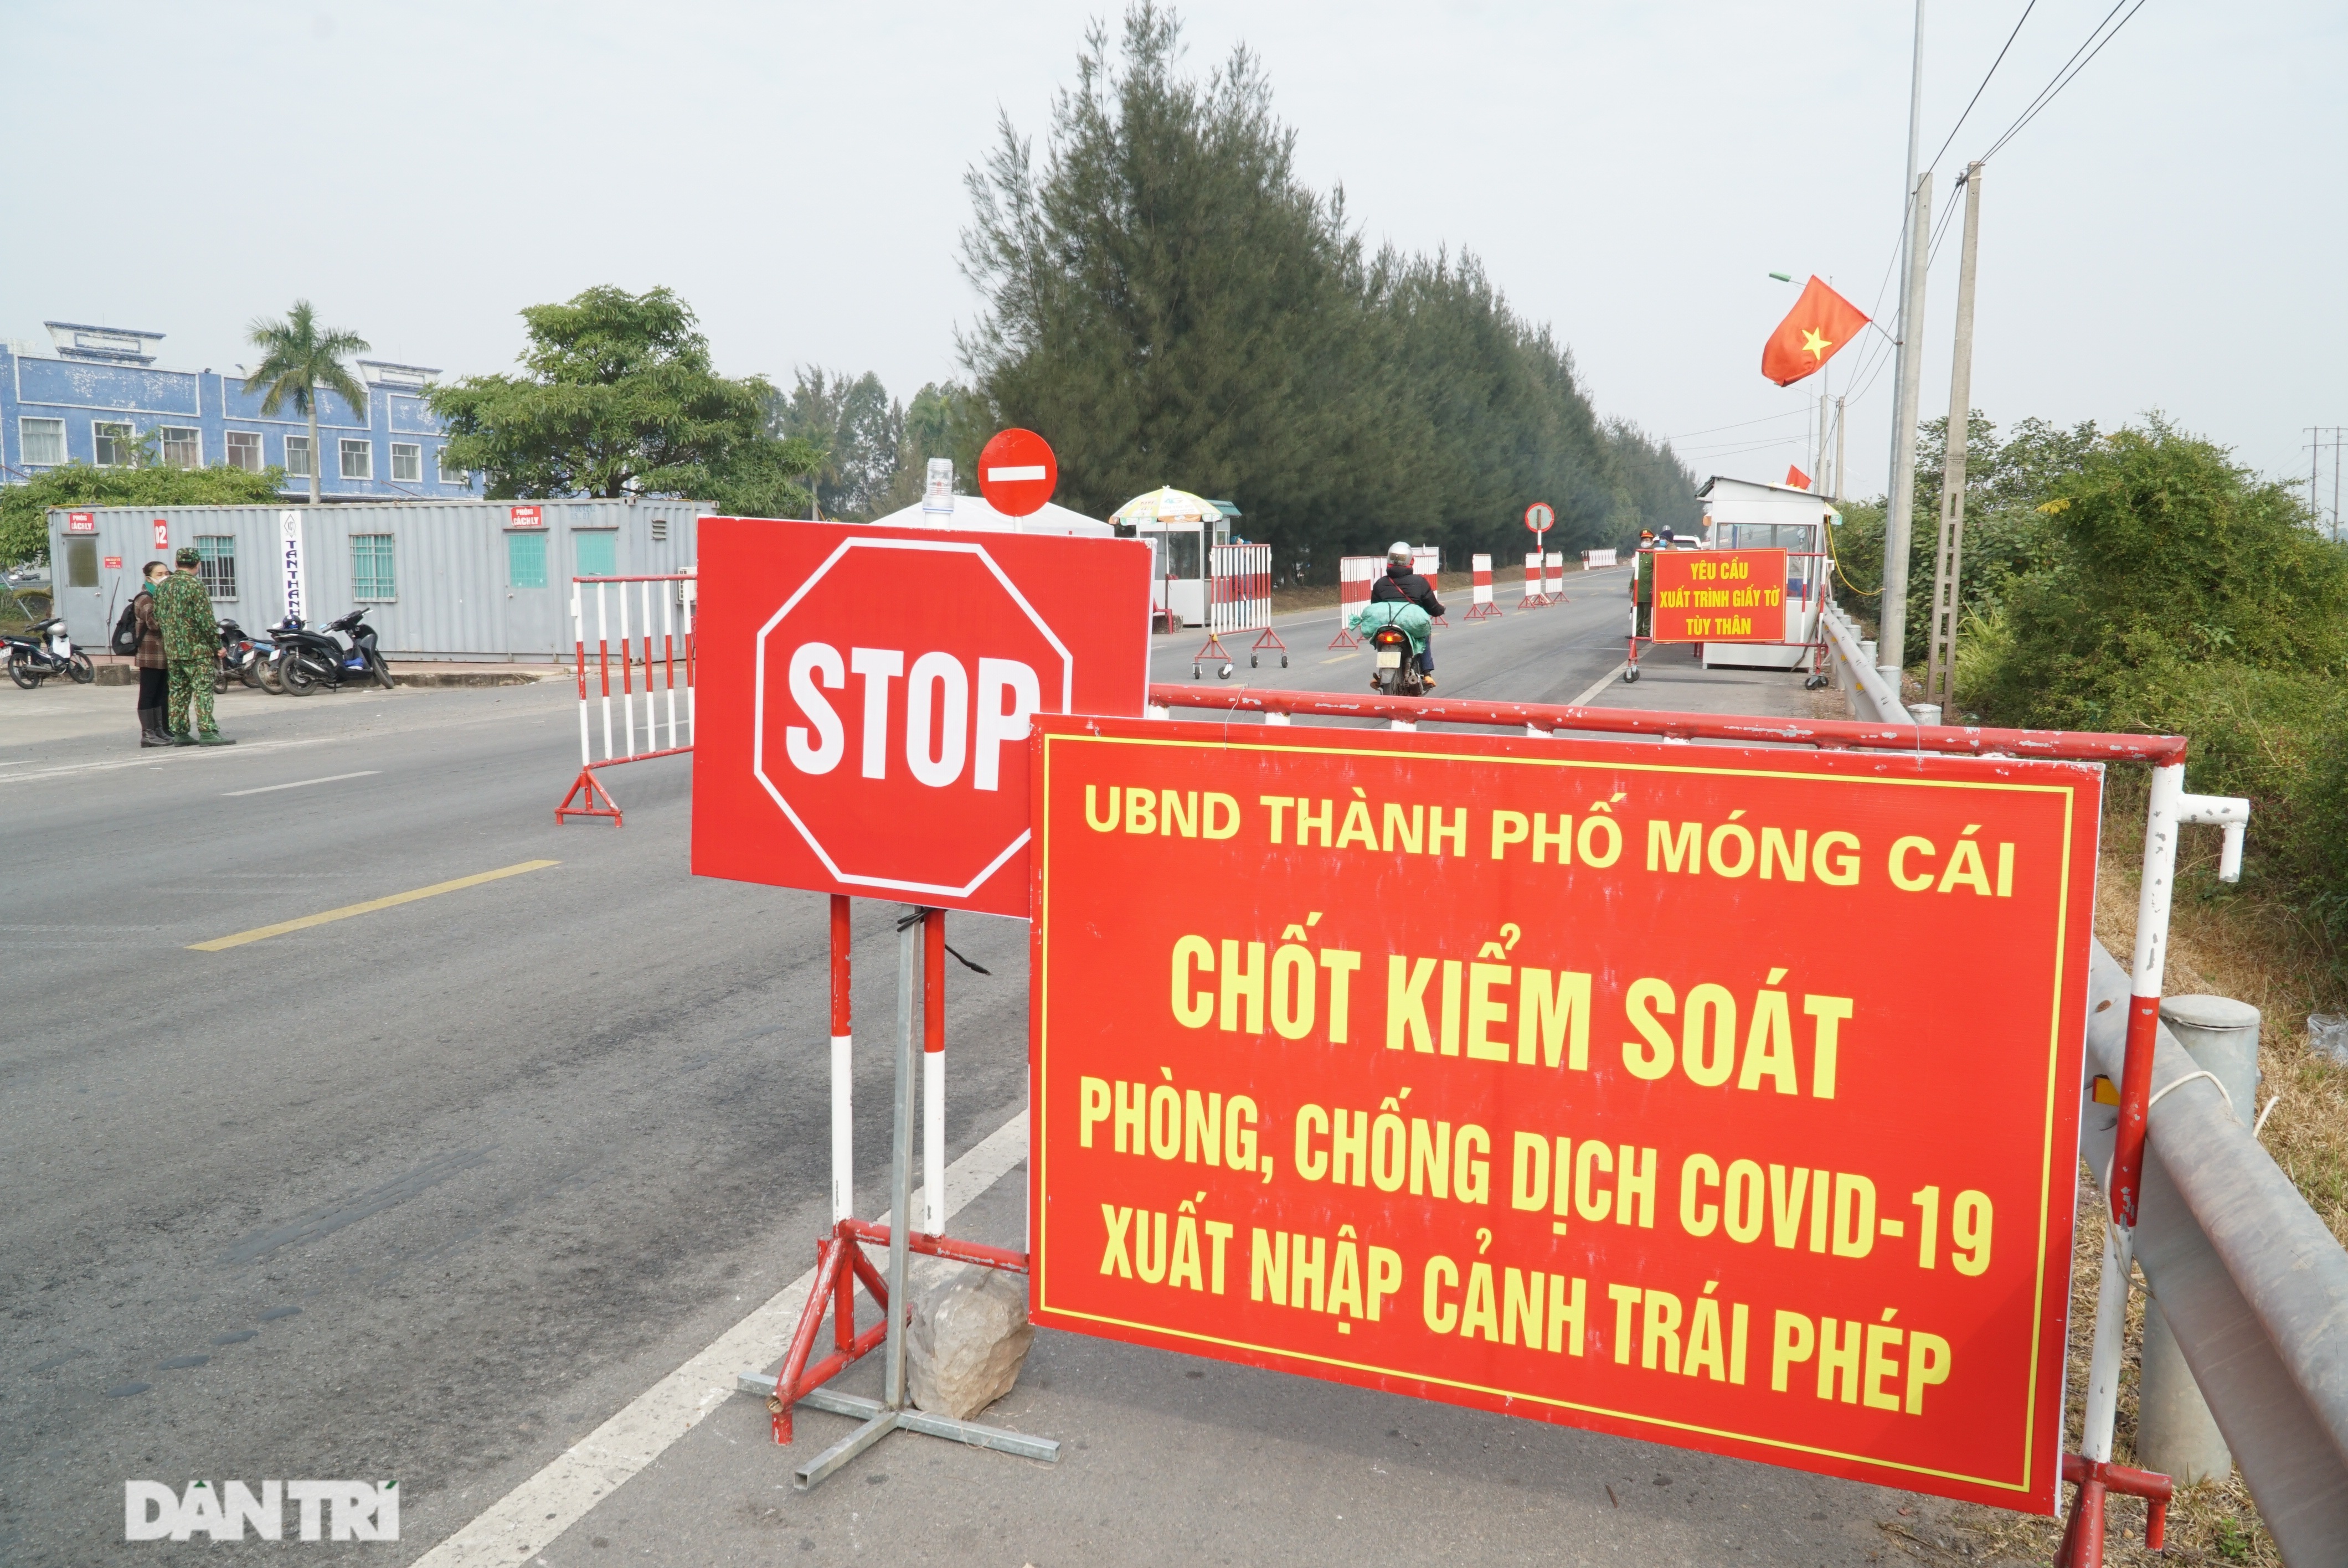 Quảng Ninh: Cuộc chiến chống Covid-19, chưa hết dịch, chưa buông tay súng - 2